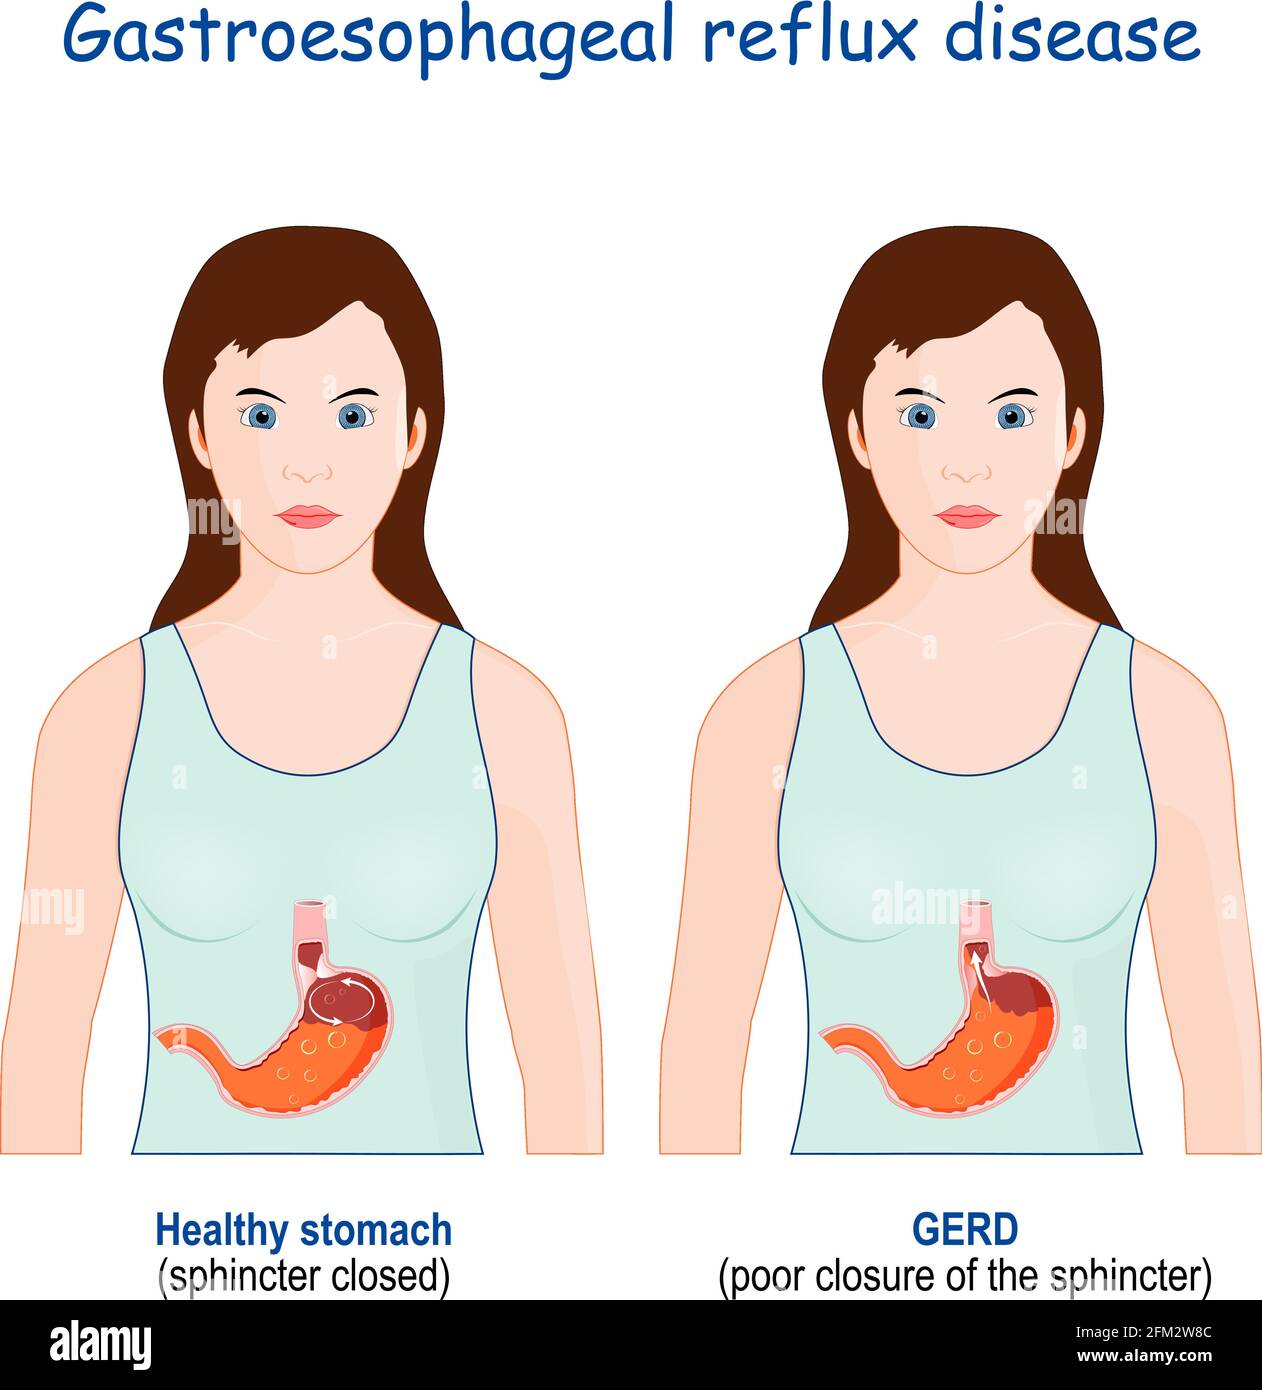 Sodbrennen Magen-und gastroösophageale Reflux-Krankheit. Frau mit gesundem Magen, und GERD (schlechter Verschluss des Schließmuskeln Stock Vektor